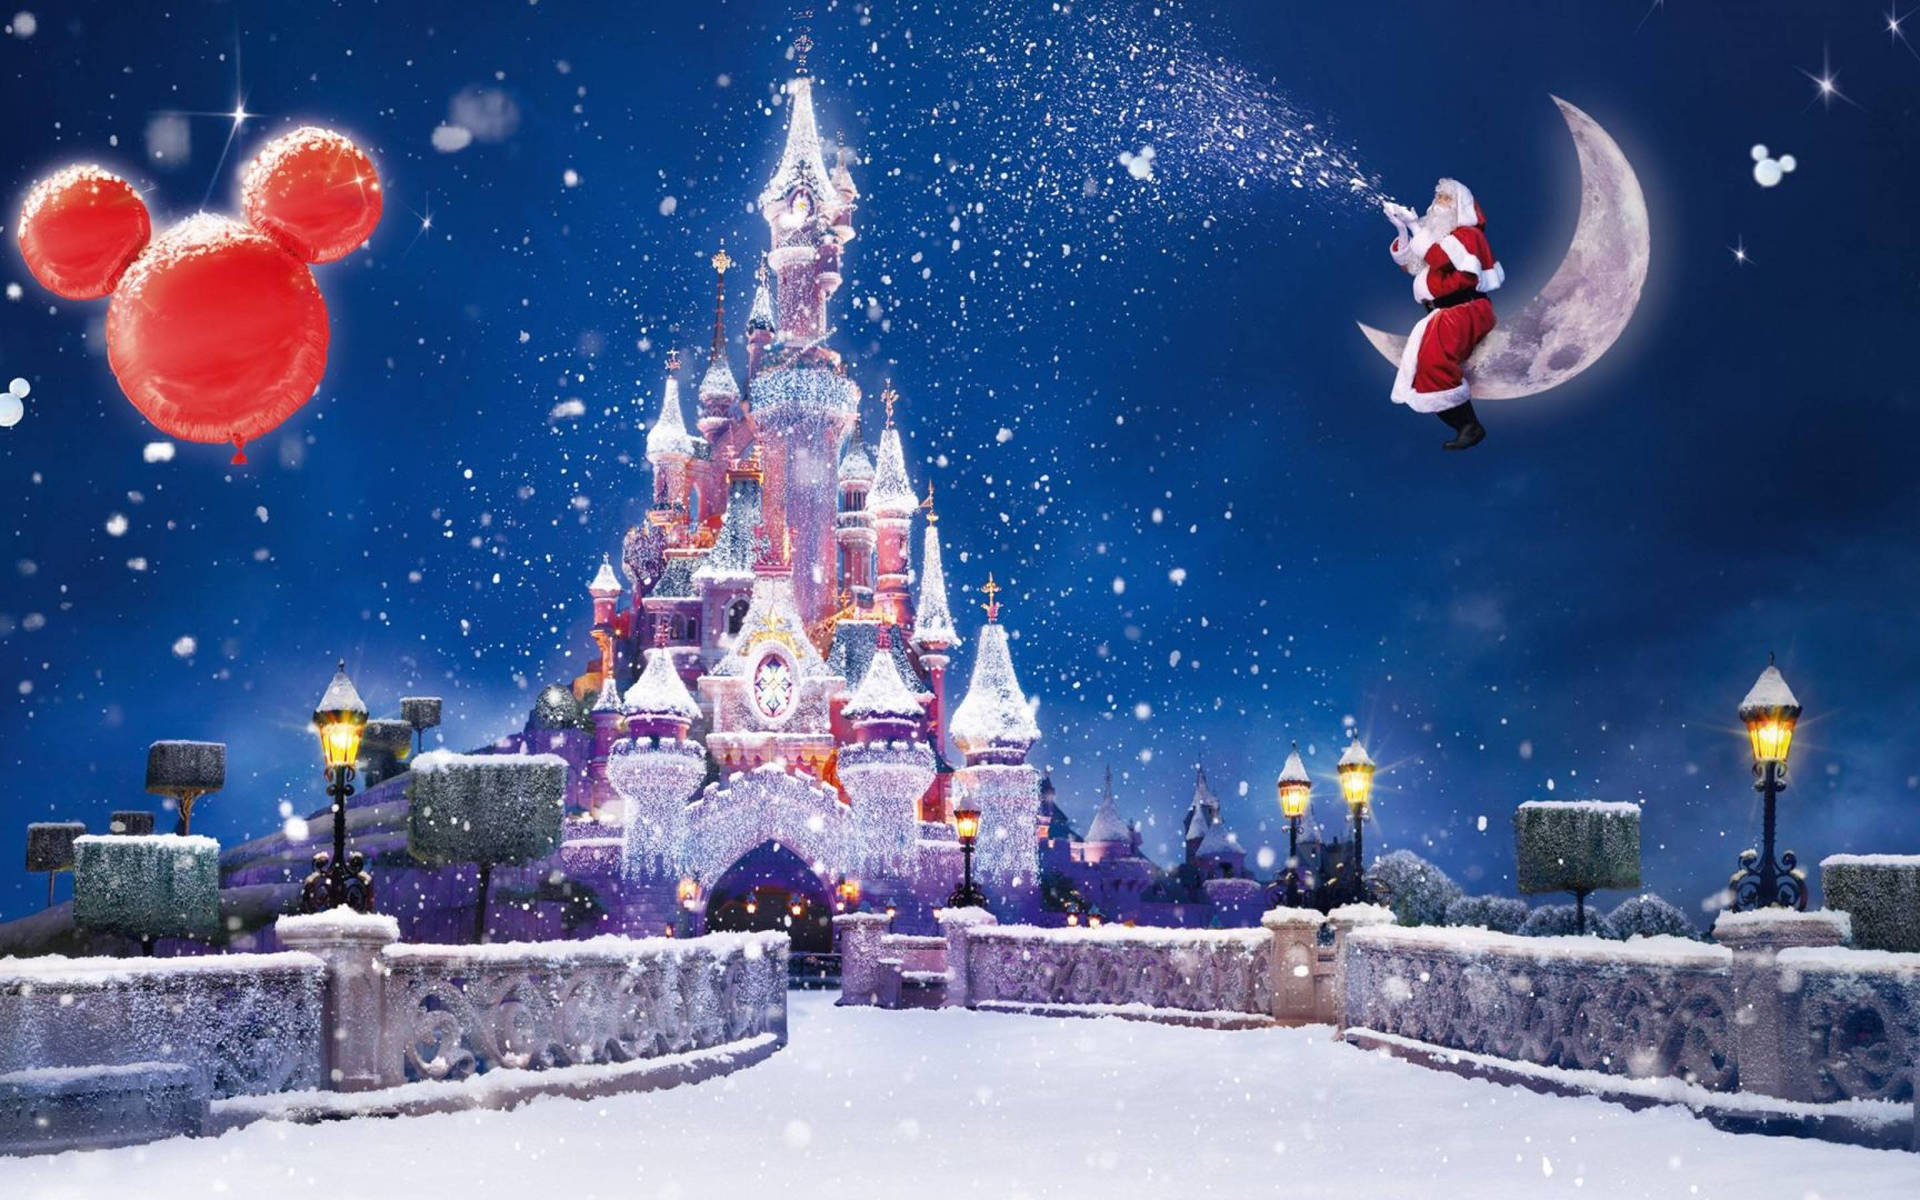 Disneyweihnachten: Der Weihnachtsmann Im Disney-schloss Wallpaper